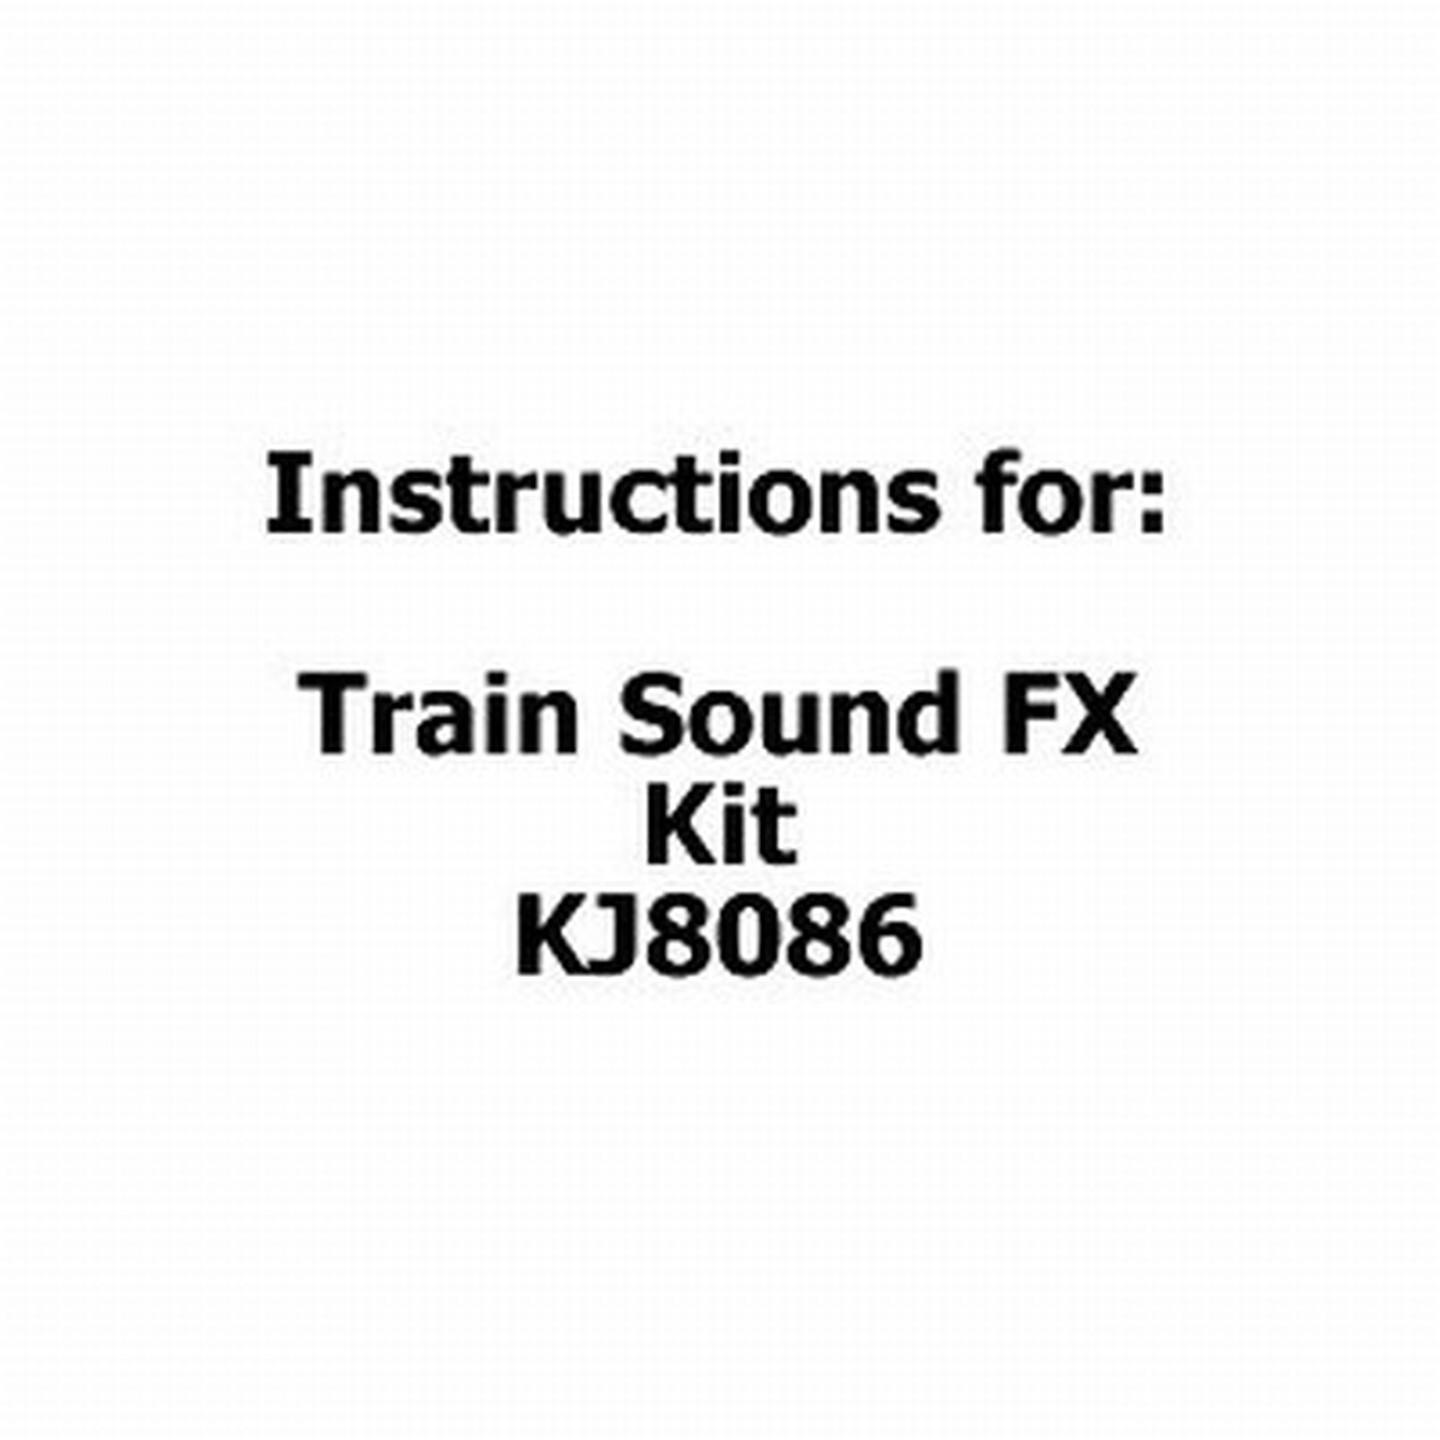 Instructions for Train Sound FX Kit KJ8086